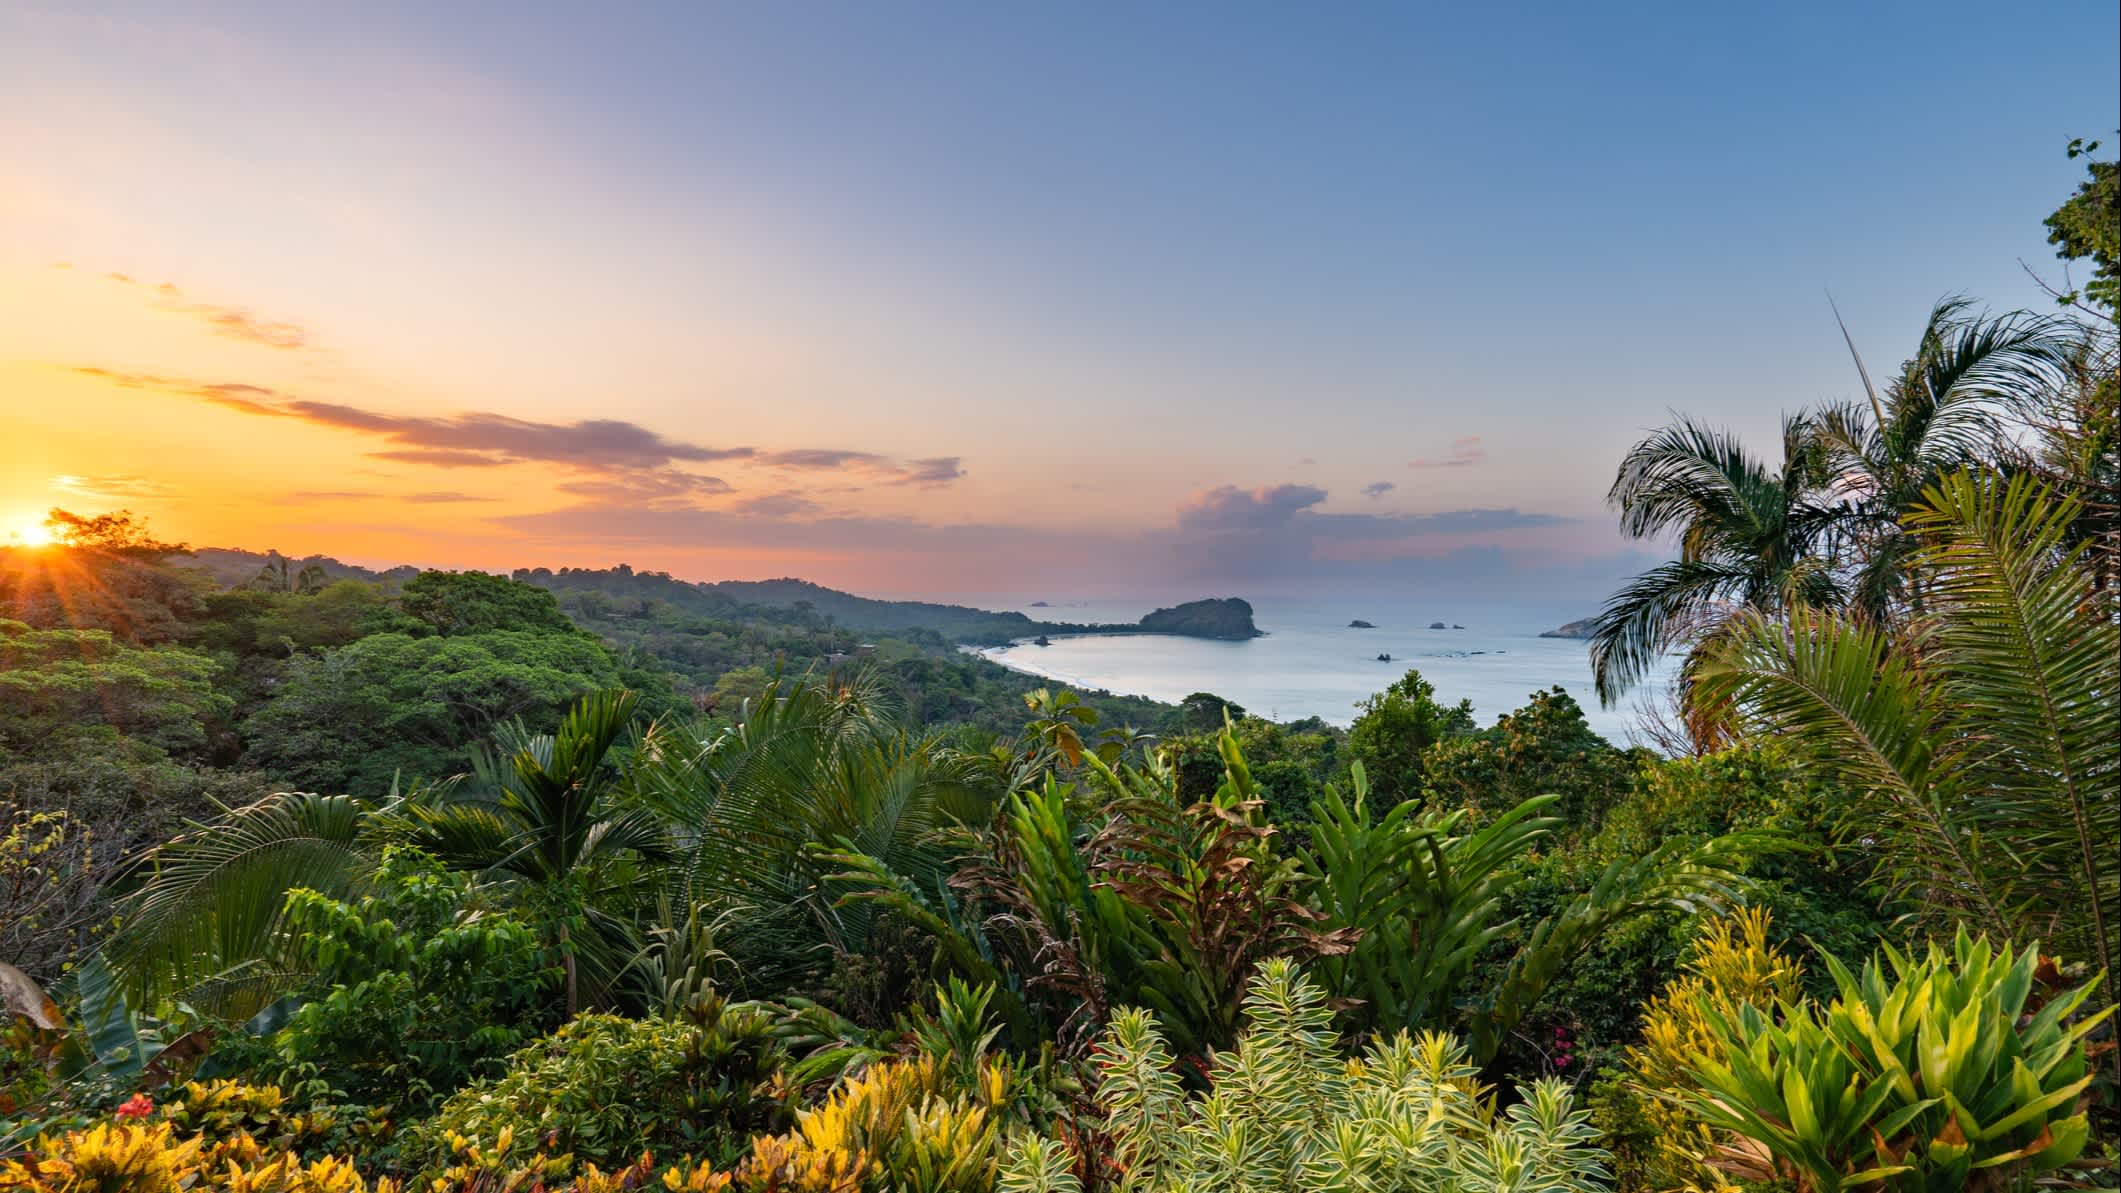 Sonnenaufgang über der Manuel Antonio Nationalpark an der Pazifikküste Costa Rica.

